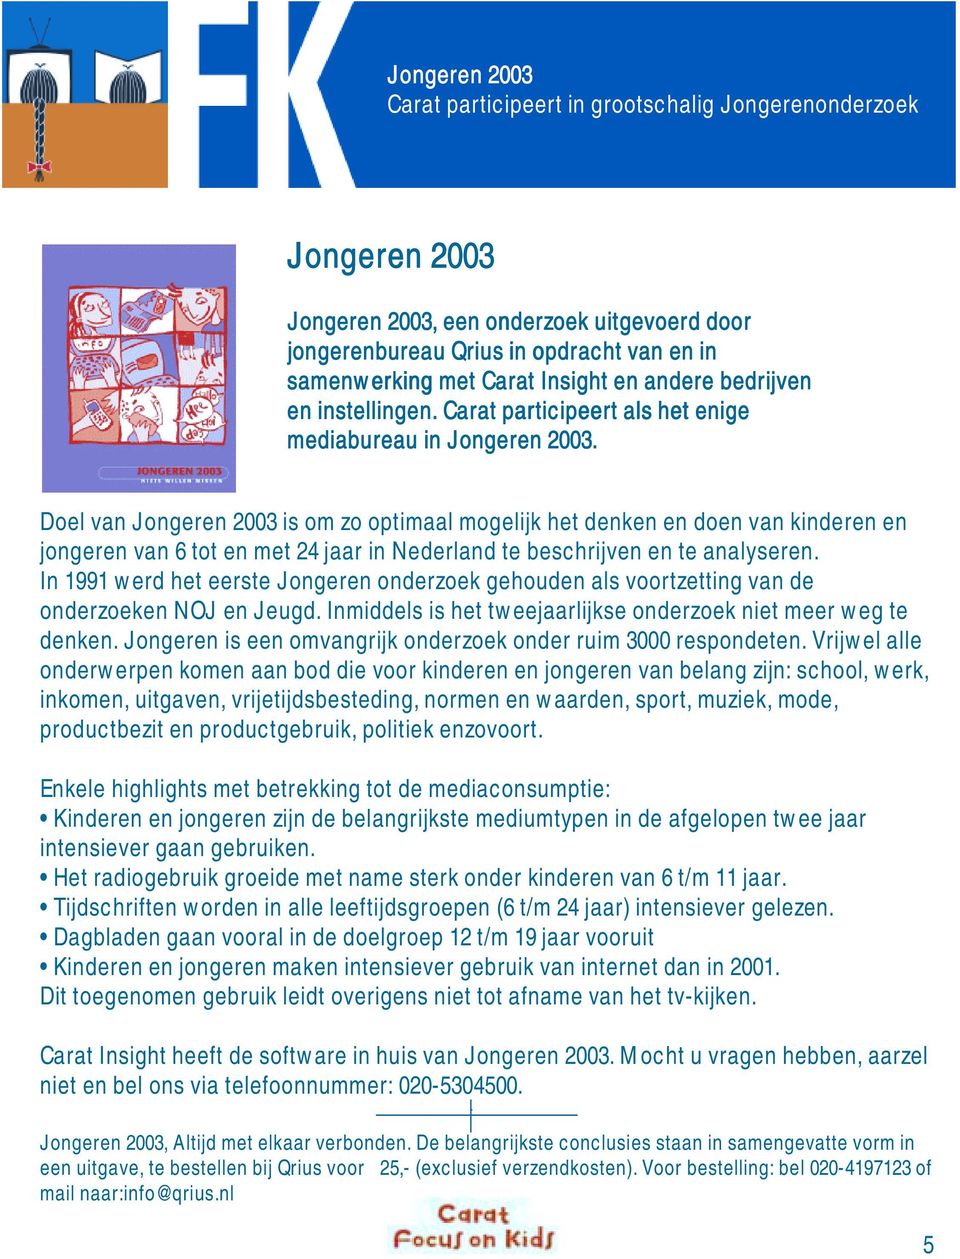 Doel van Jongeren 200 is om zo optimaal mogelijk het denken en doen van kinderen en jongeren van 6 tot en met 24 jaar in Nederland te beschrijven en te analyseren.